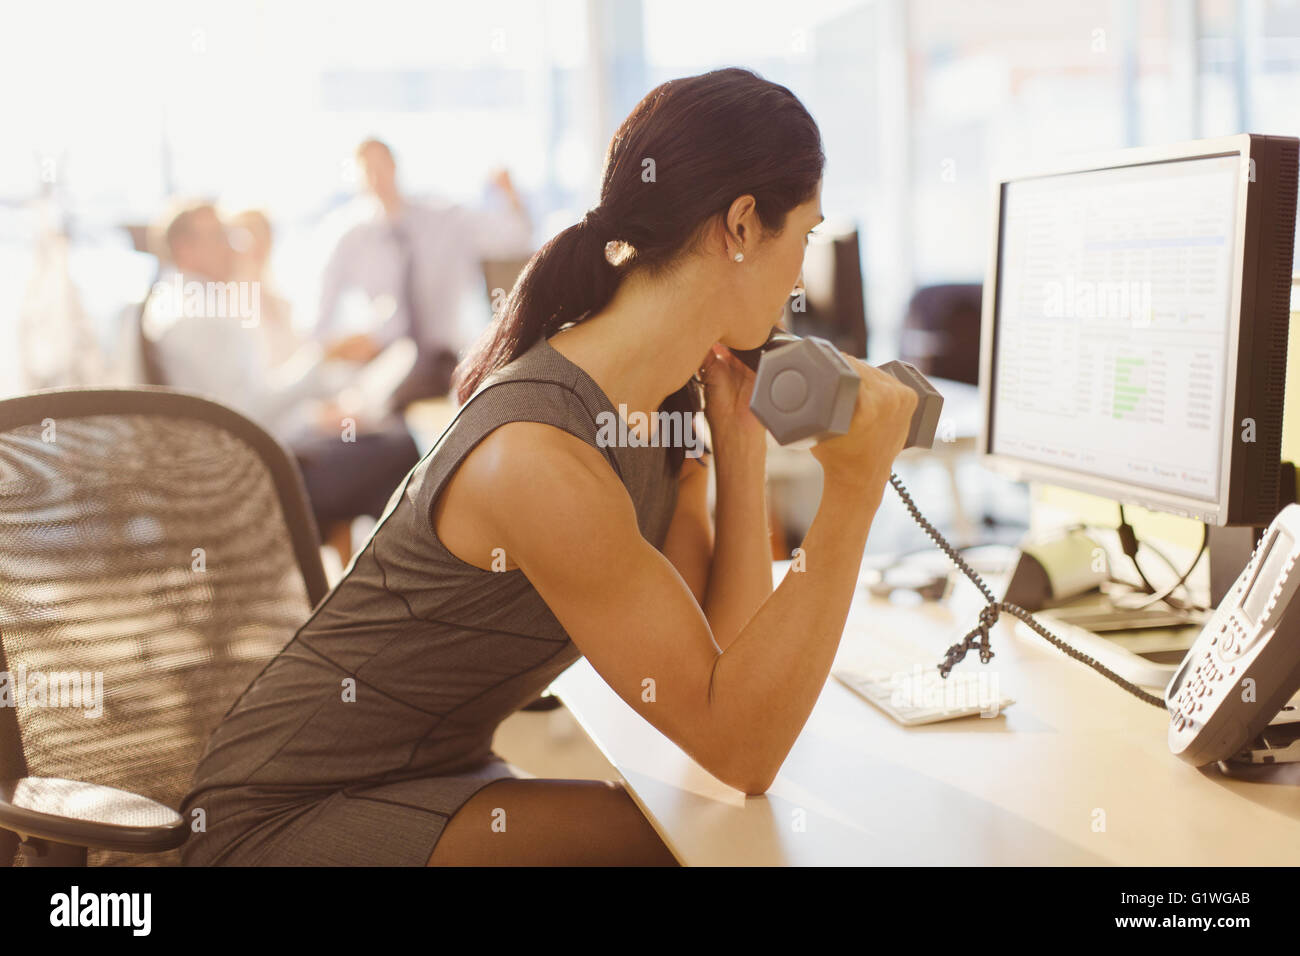 Businesswoman faisant de biceps avec haltère et talking on telephone at computer in office Banque D'Images